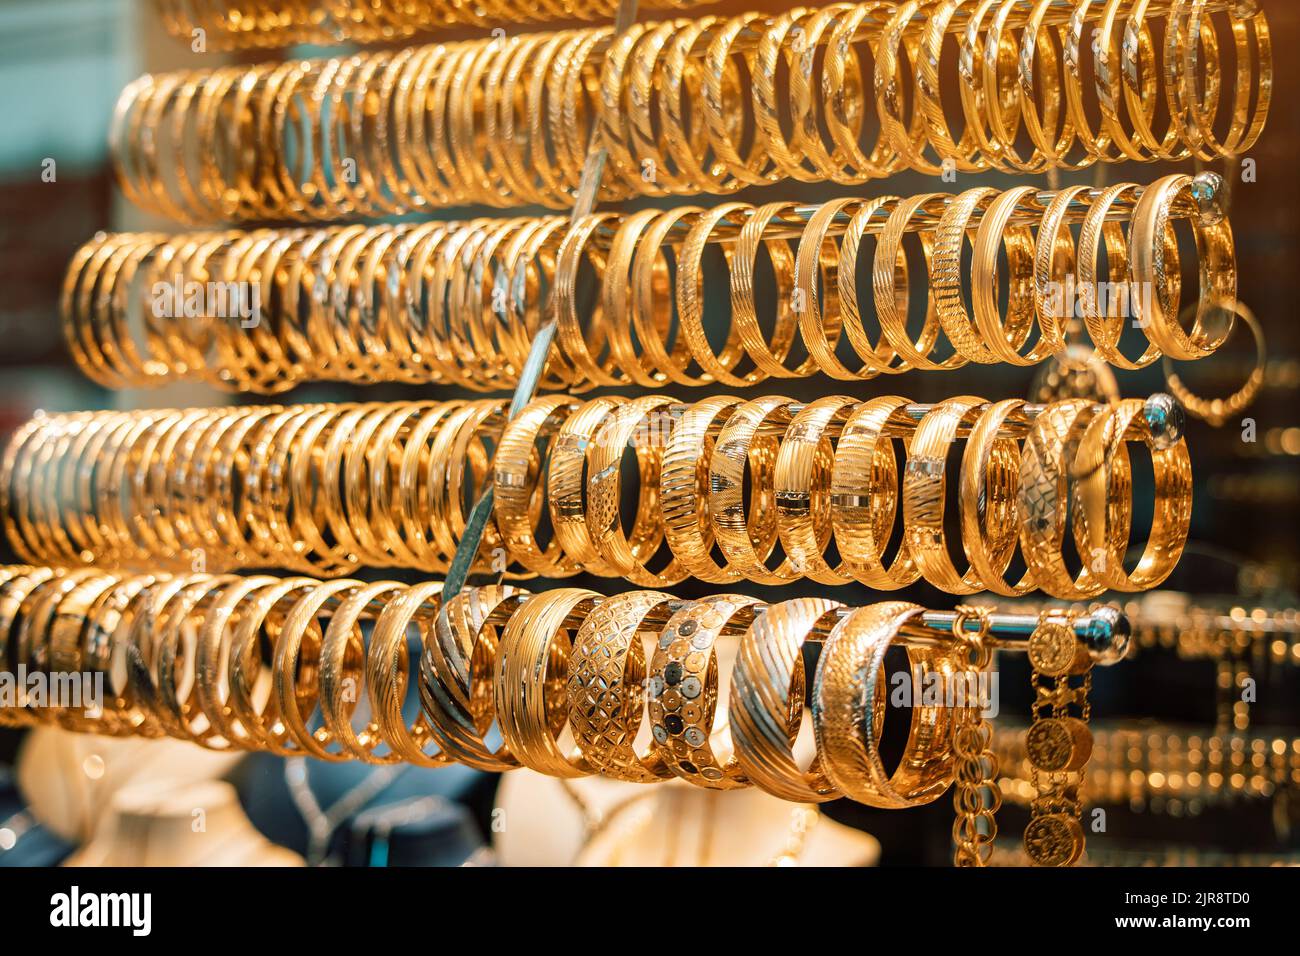 Un magasin de bijoux vitrine avec des bijoux dorés, des bracelets et des accessoires. Le concept des investissements et de l'épargne avec l'or. Banque D'Images